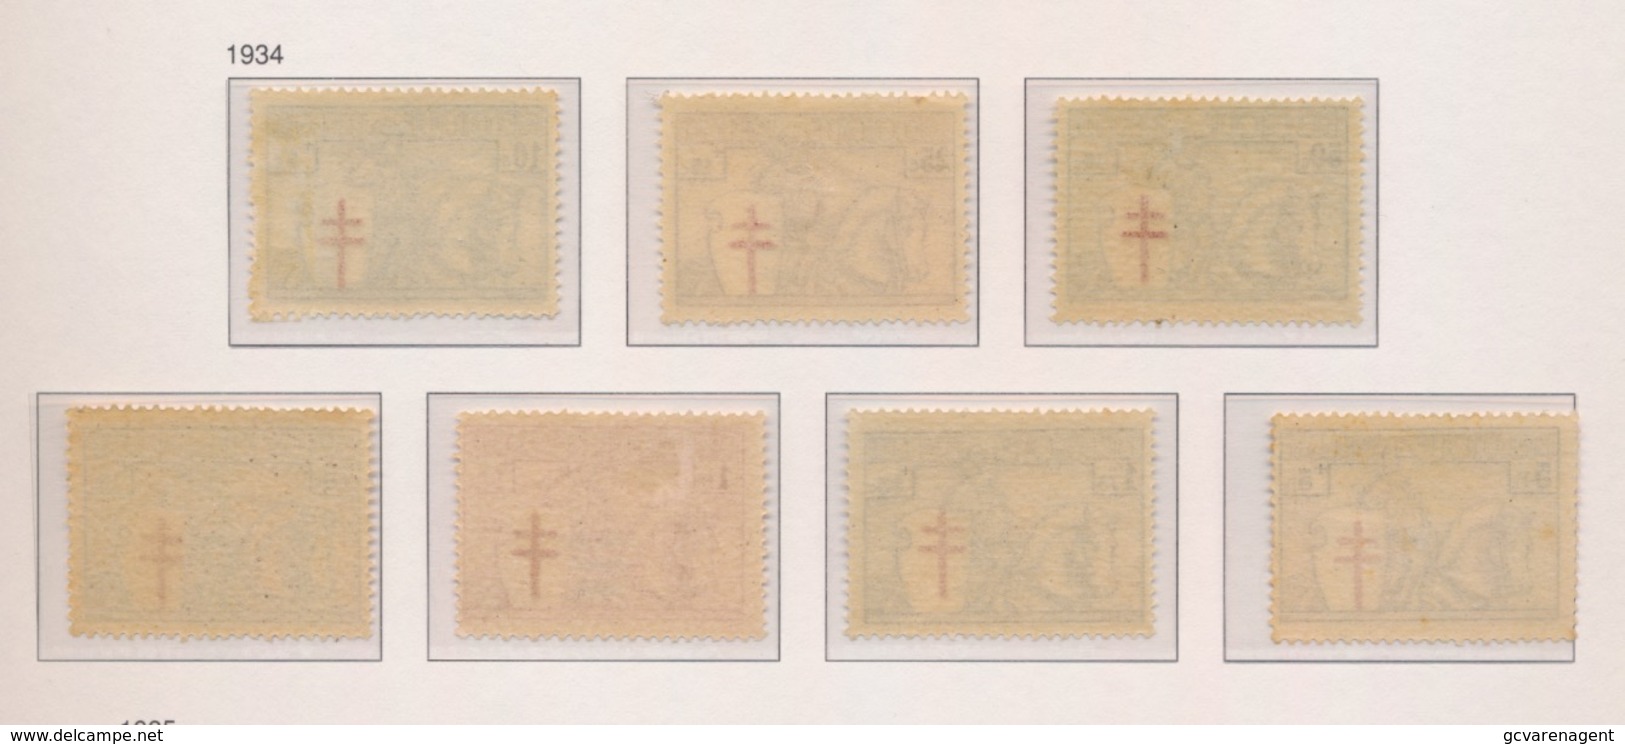 1934  6 ZEGELS  POSTFRIS MET SPOREN VAN SCHARNIER   394  399 - Unused Stamps